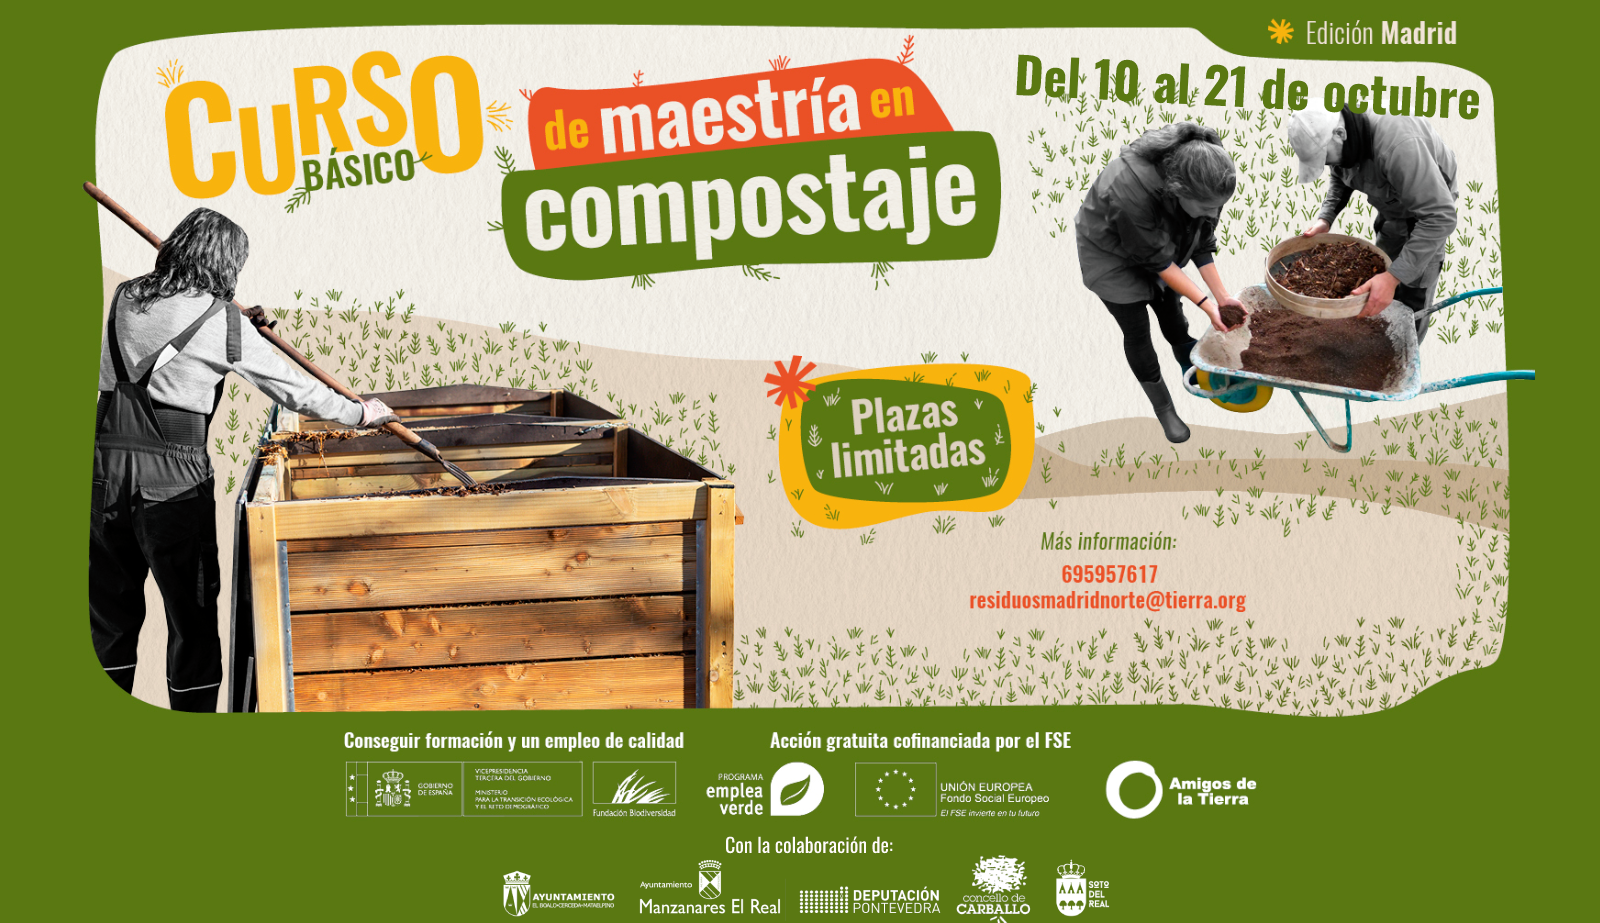 Ir a Nuevo curso básico de maestría en compostaje en Madrid